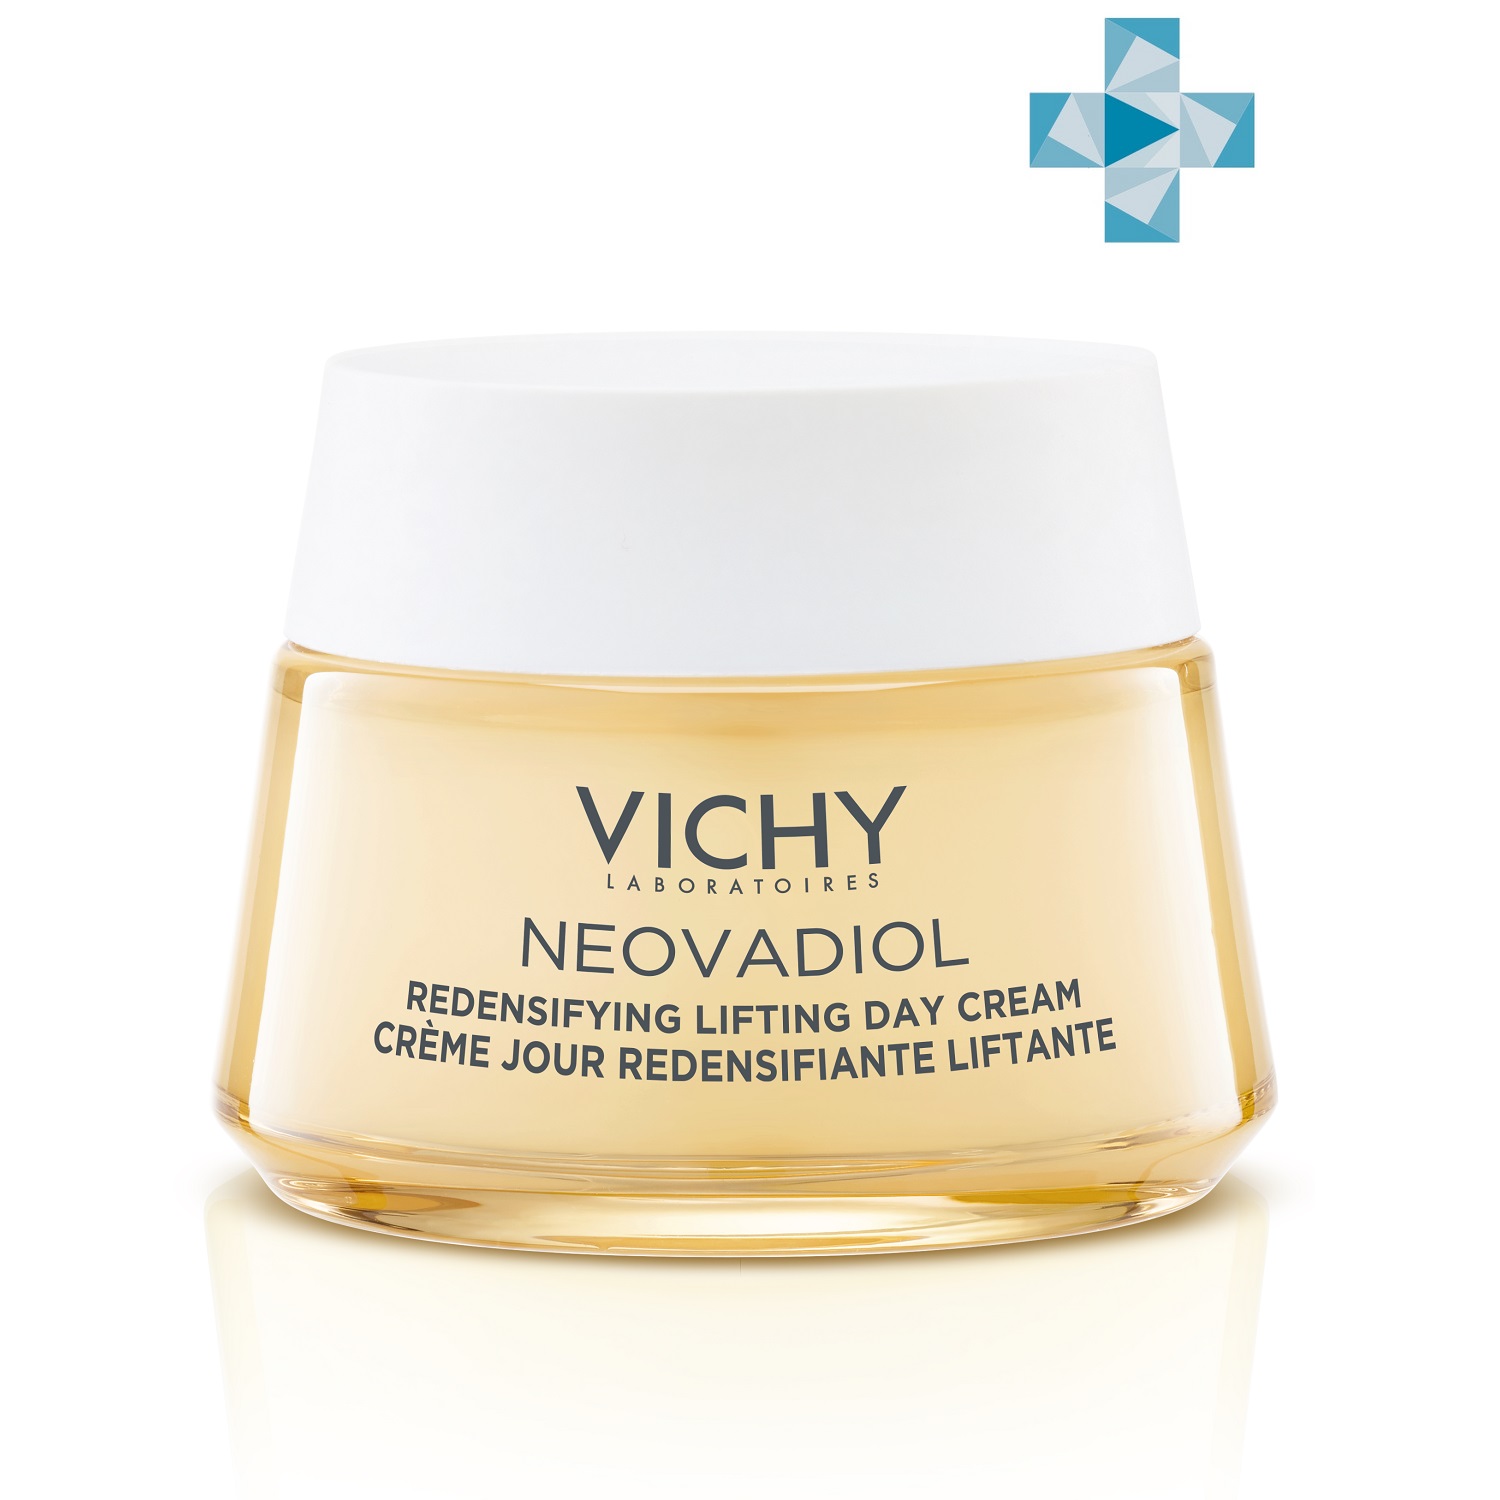 Vichy Уплотняющий дневной лифтинг-крем для нормальной и комбинированной кожи в период пред-менопаузы, 50 мл (Vichy, Neovadiol) цена и фото